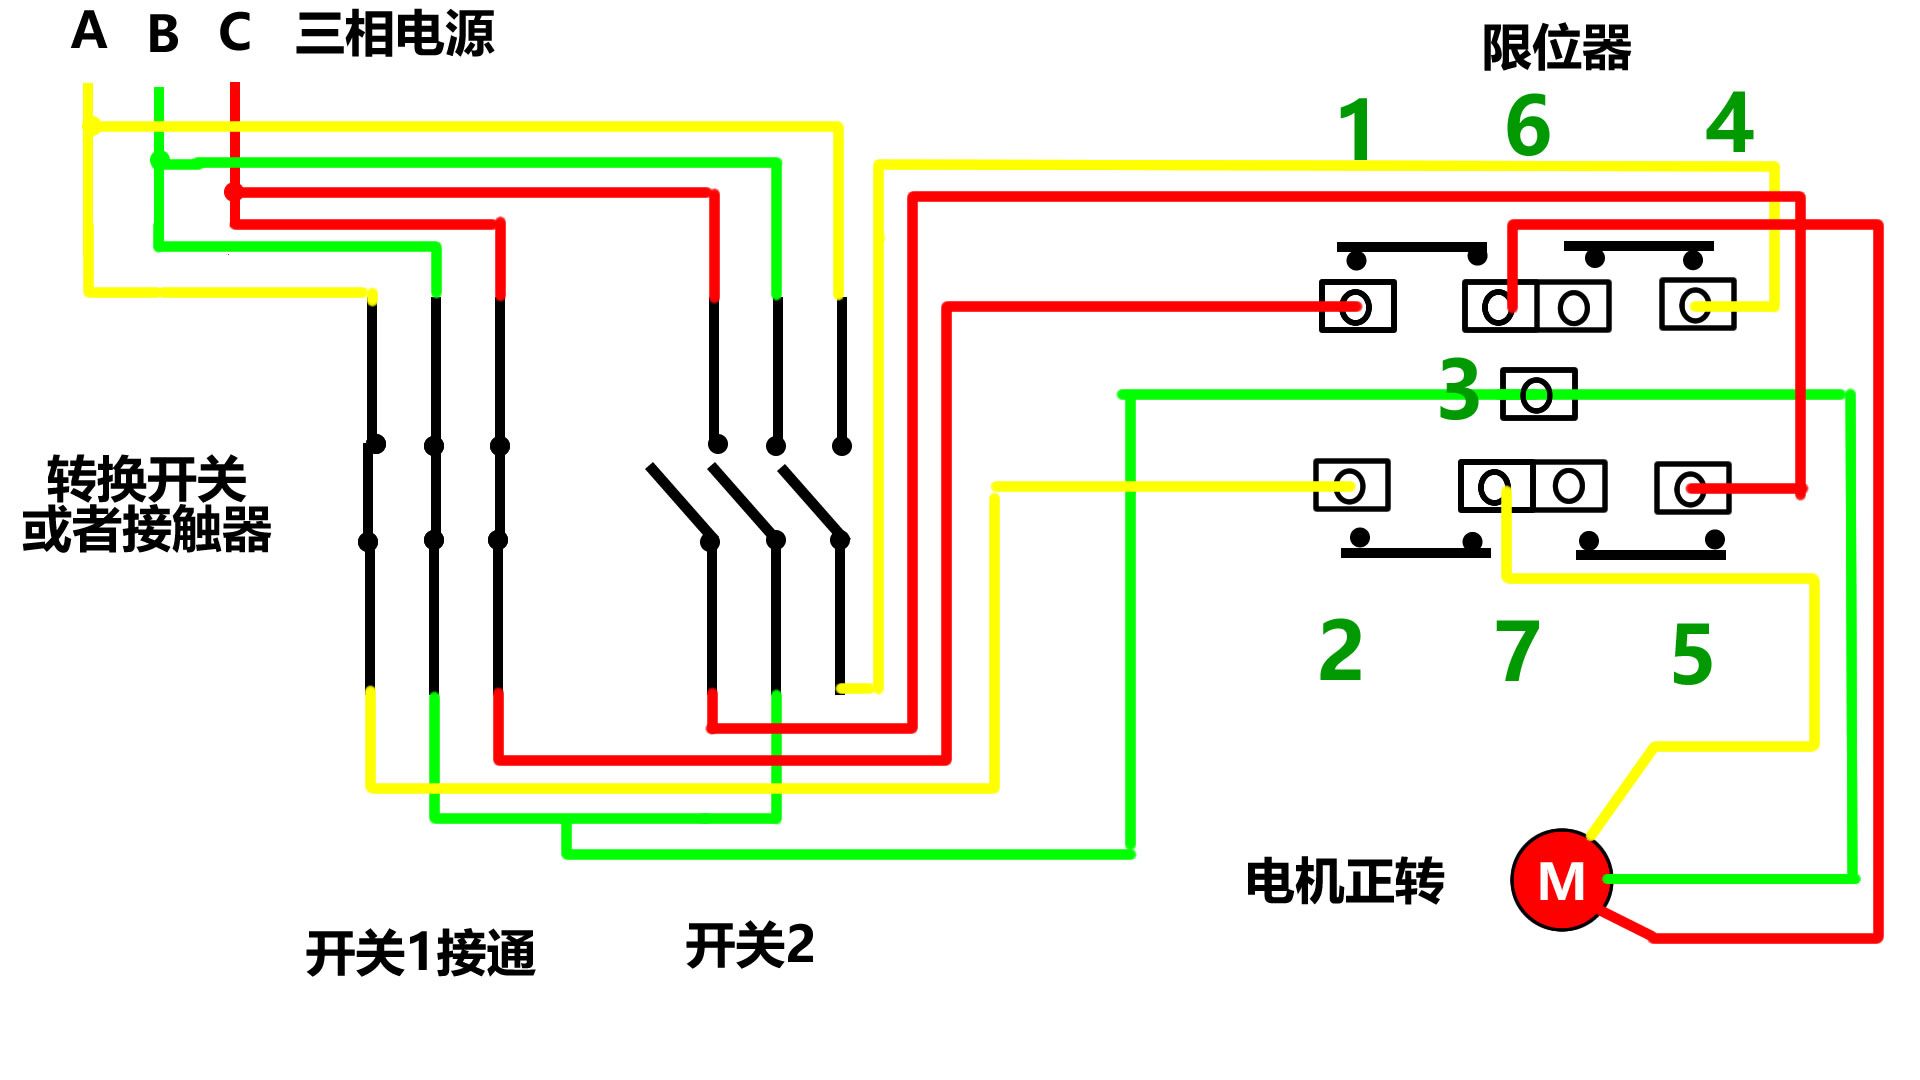 1,正常情况下,电动葫芦由三部分组成,即电源接触器或者转换开关,限位